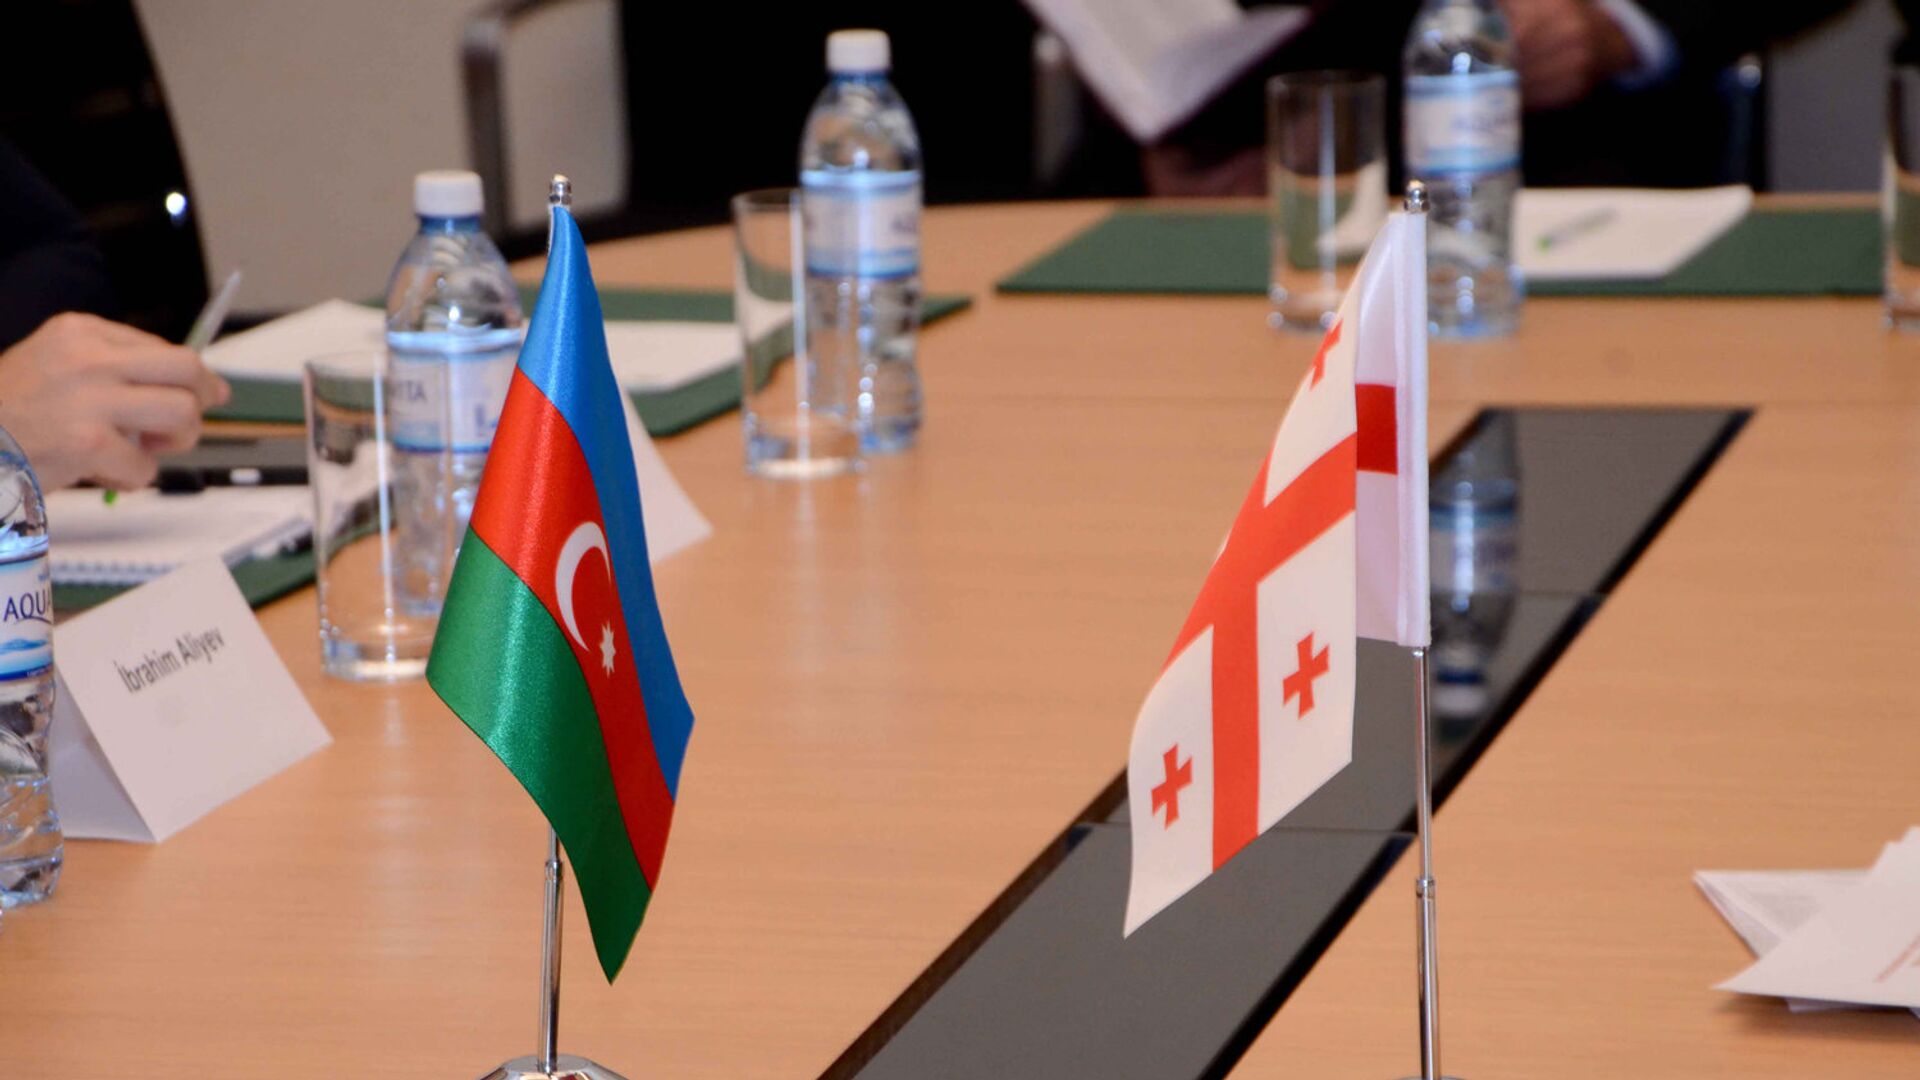 Заседание совместной азербайджано-грузинской комиссии по вопросам международных автомобильных связей, Баку, 9 февраля 2017 года - Sputnik Азербайджан, 1920, 05.05.2021